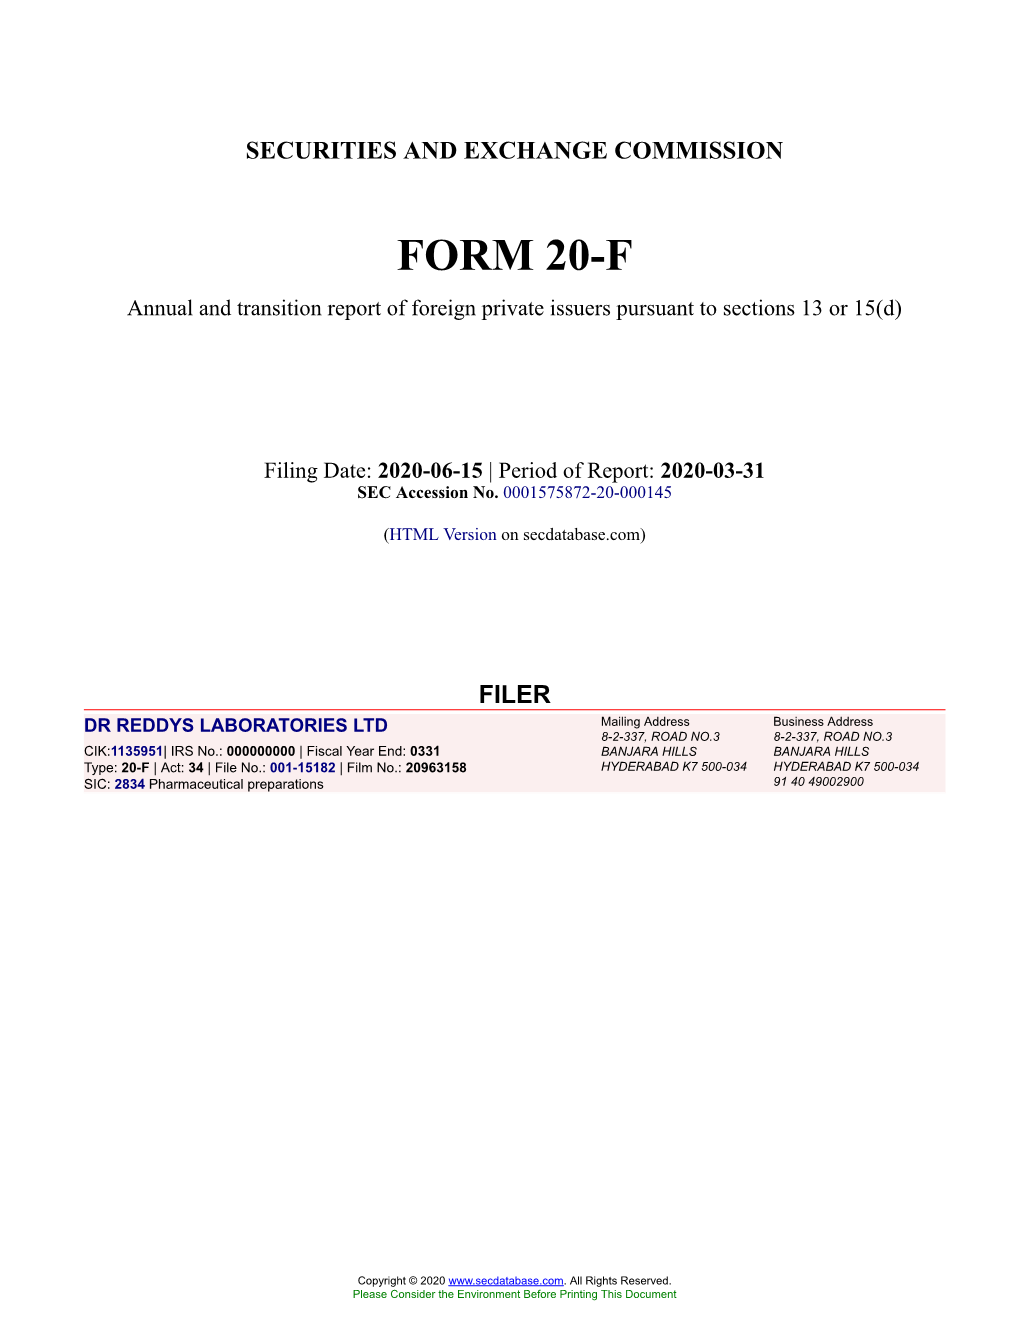 DR REDDYS LABORATORIES LTD Form 20-F Filed 2020-06-15